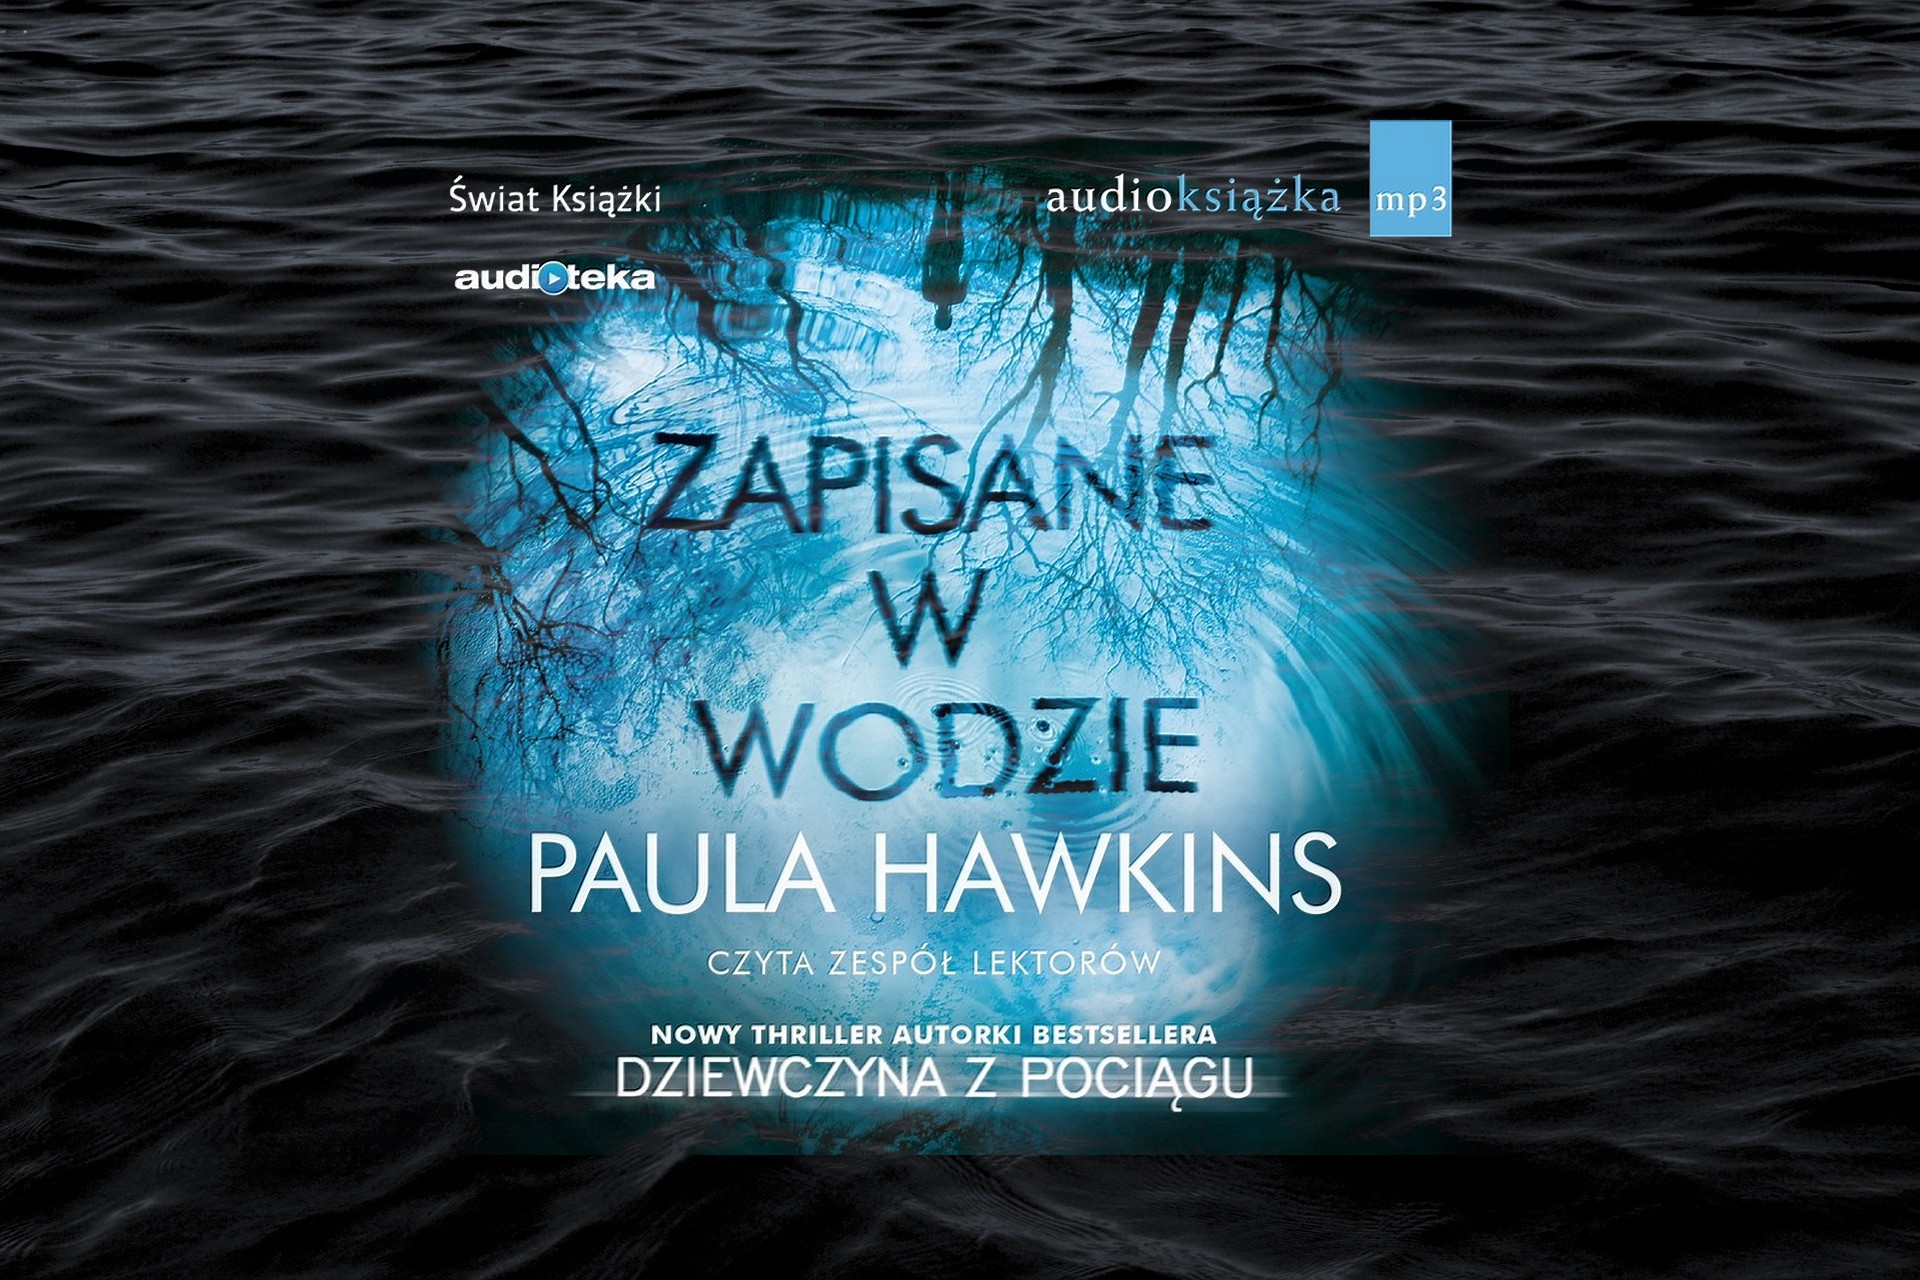 Recenzja książki Pauli Hawkins „Zapisane w wodzie”